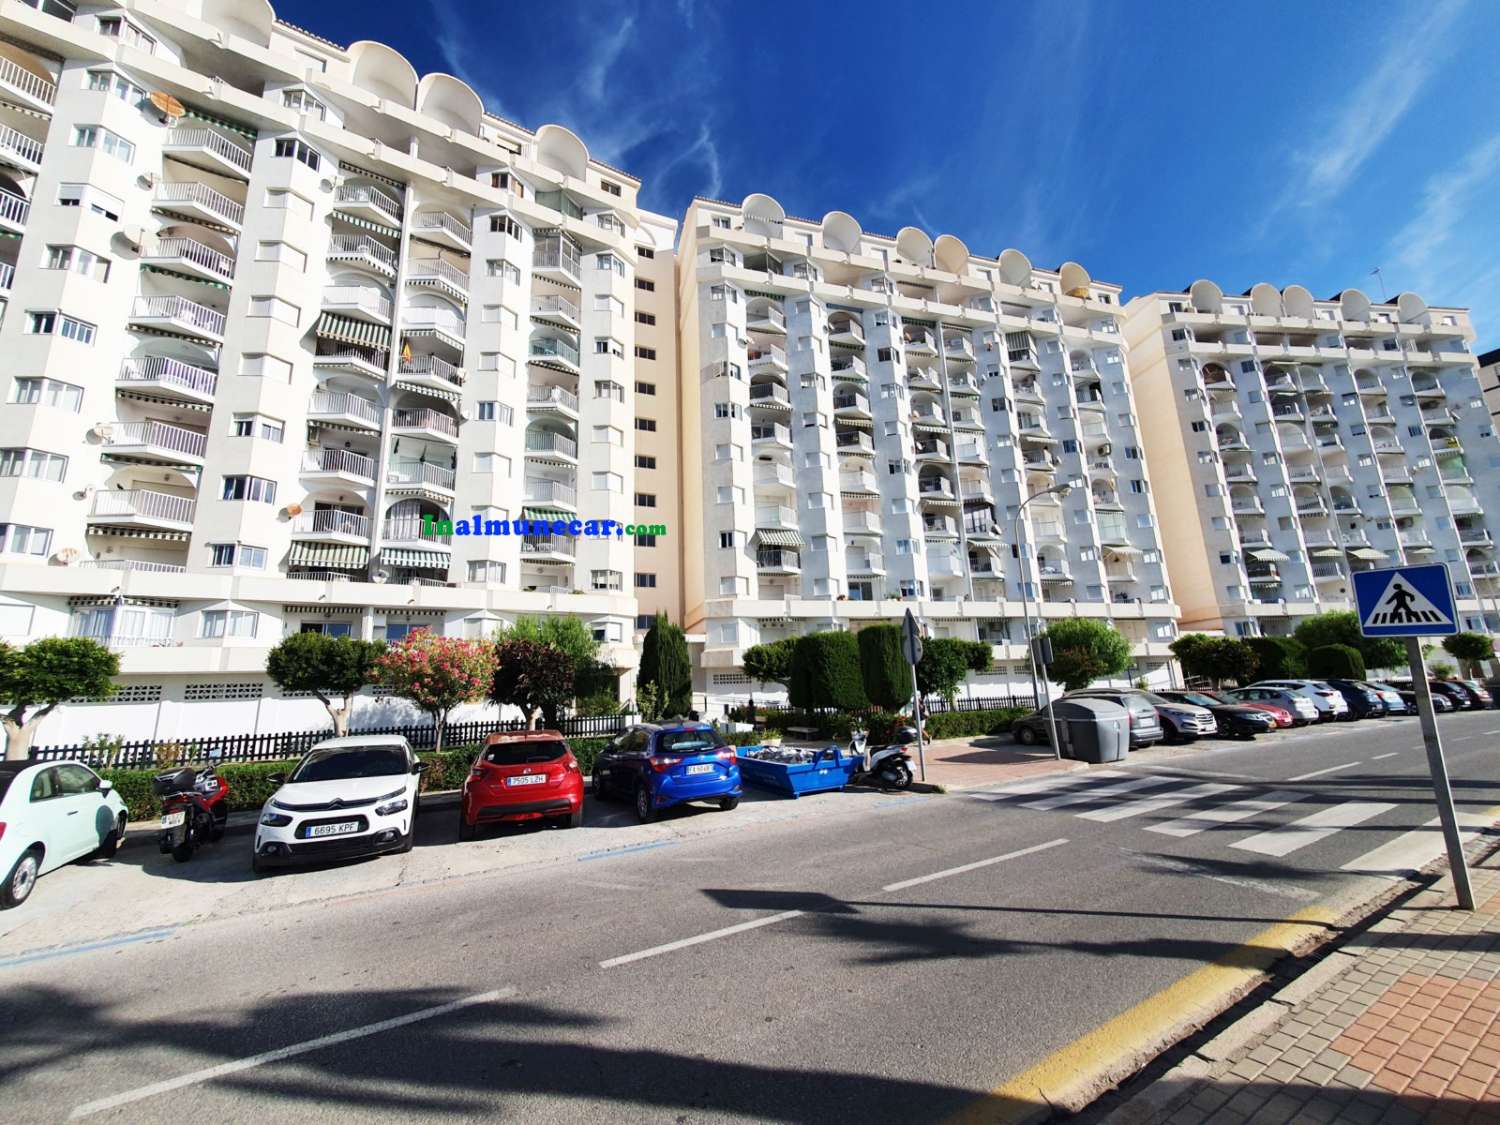 Appartement avec place de parking à vendre en bord de mer, Paseo de Cotobro, Almuñécar, Costa Tropical.